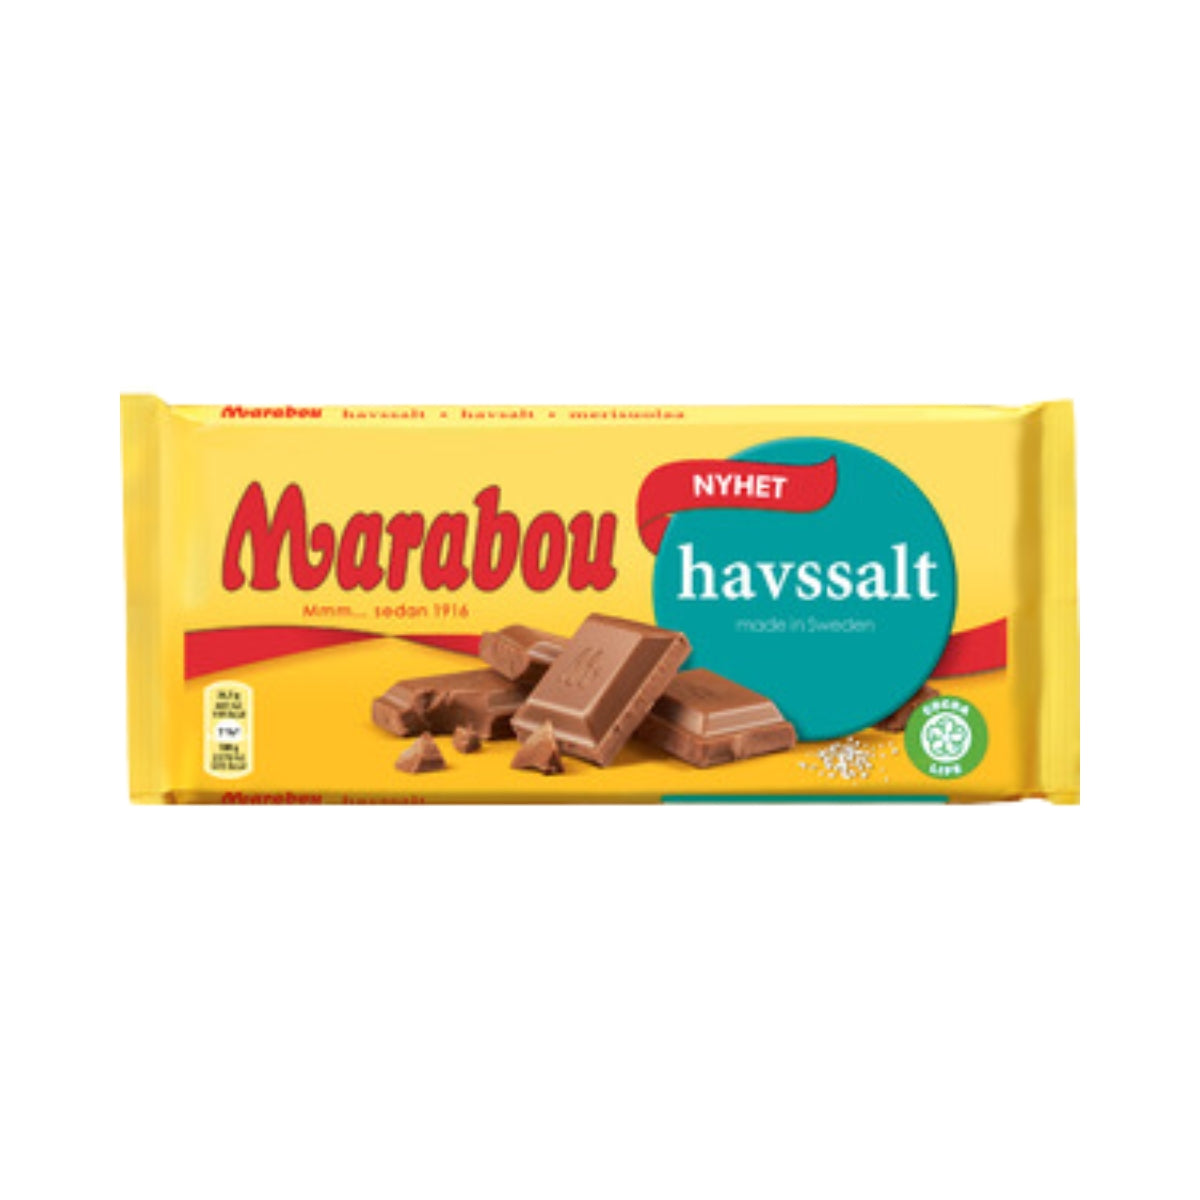 Marabou Havsalt 185 g